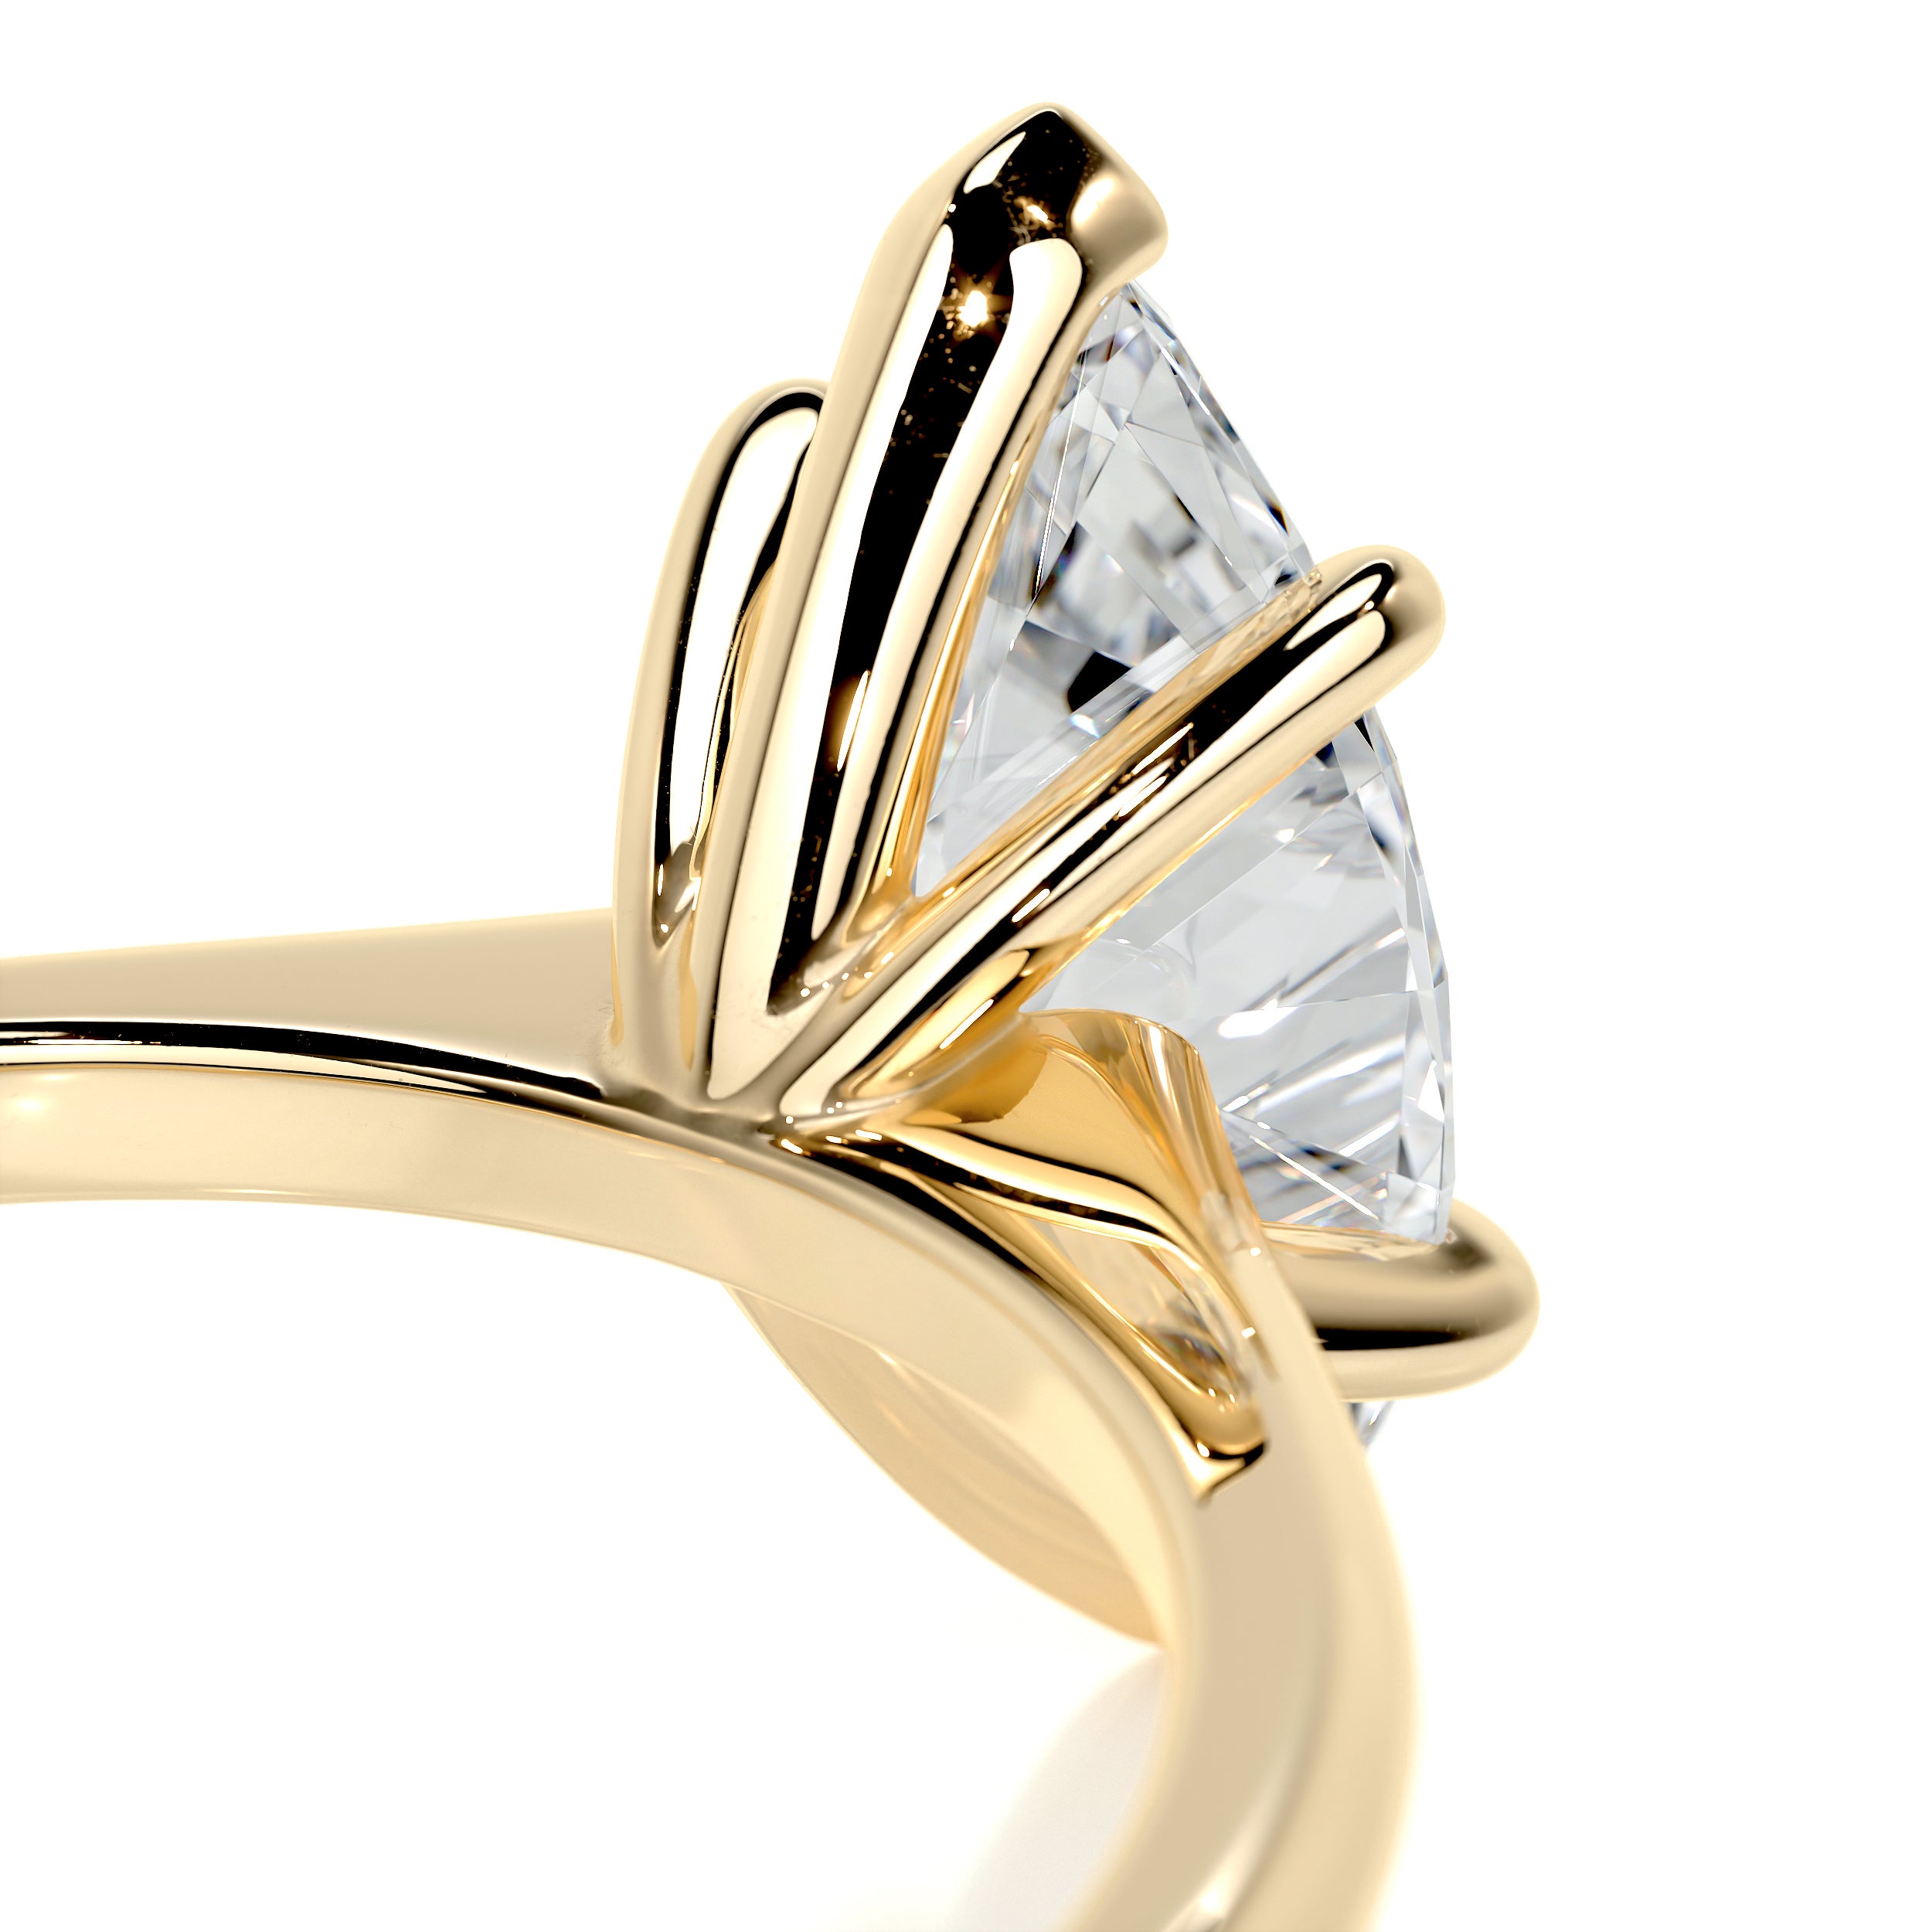 Samantha Diamond Engagement Ring   (1 Carat) -18K Yellow Gold